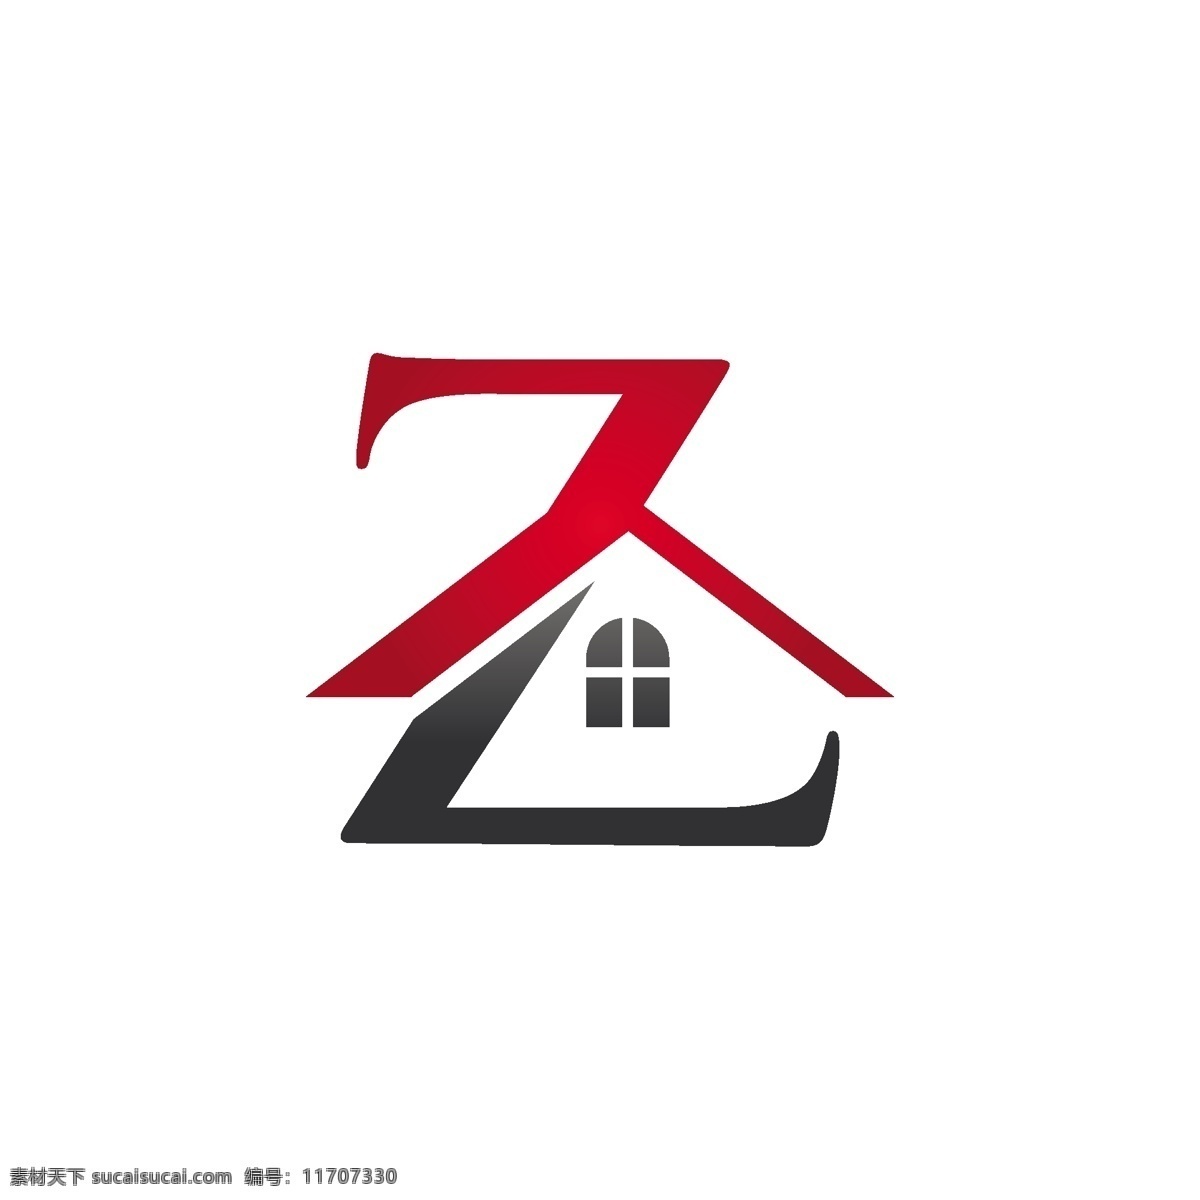 房产 logo 字母 造型 类 科技 标志 创意 广告 简约 互联网 科技logo 领域 多用途 标识 公司 企业标识 企业logo